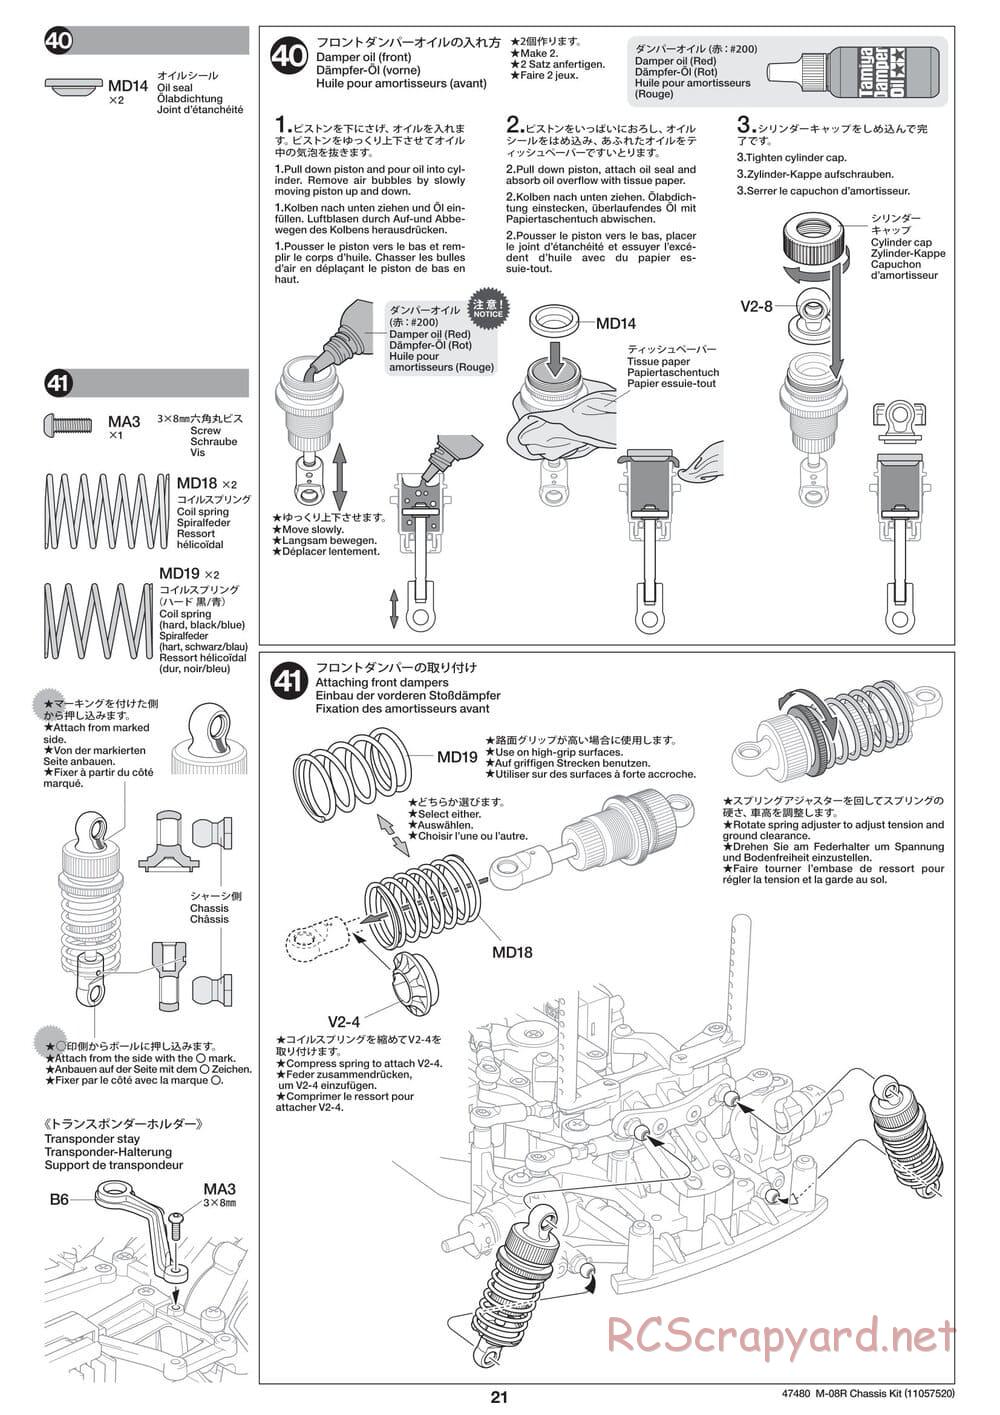 Tamiya - M-08R Chassis - Manual - Page 21